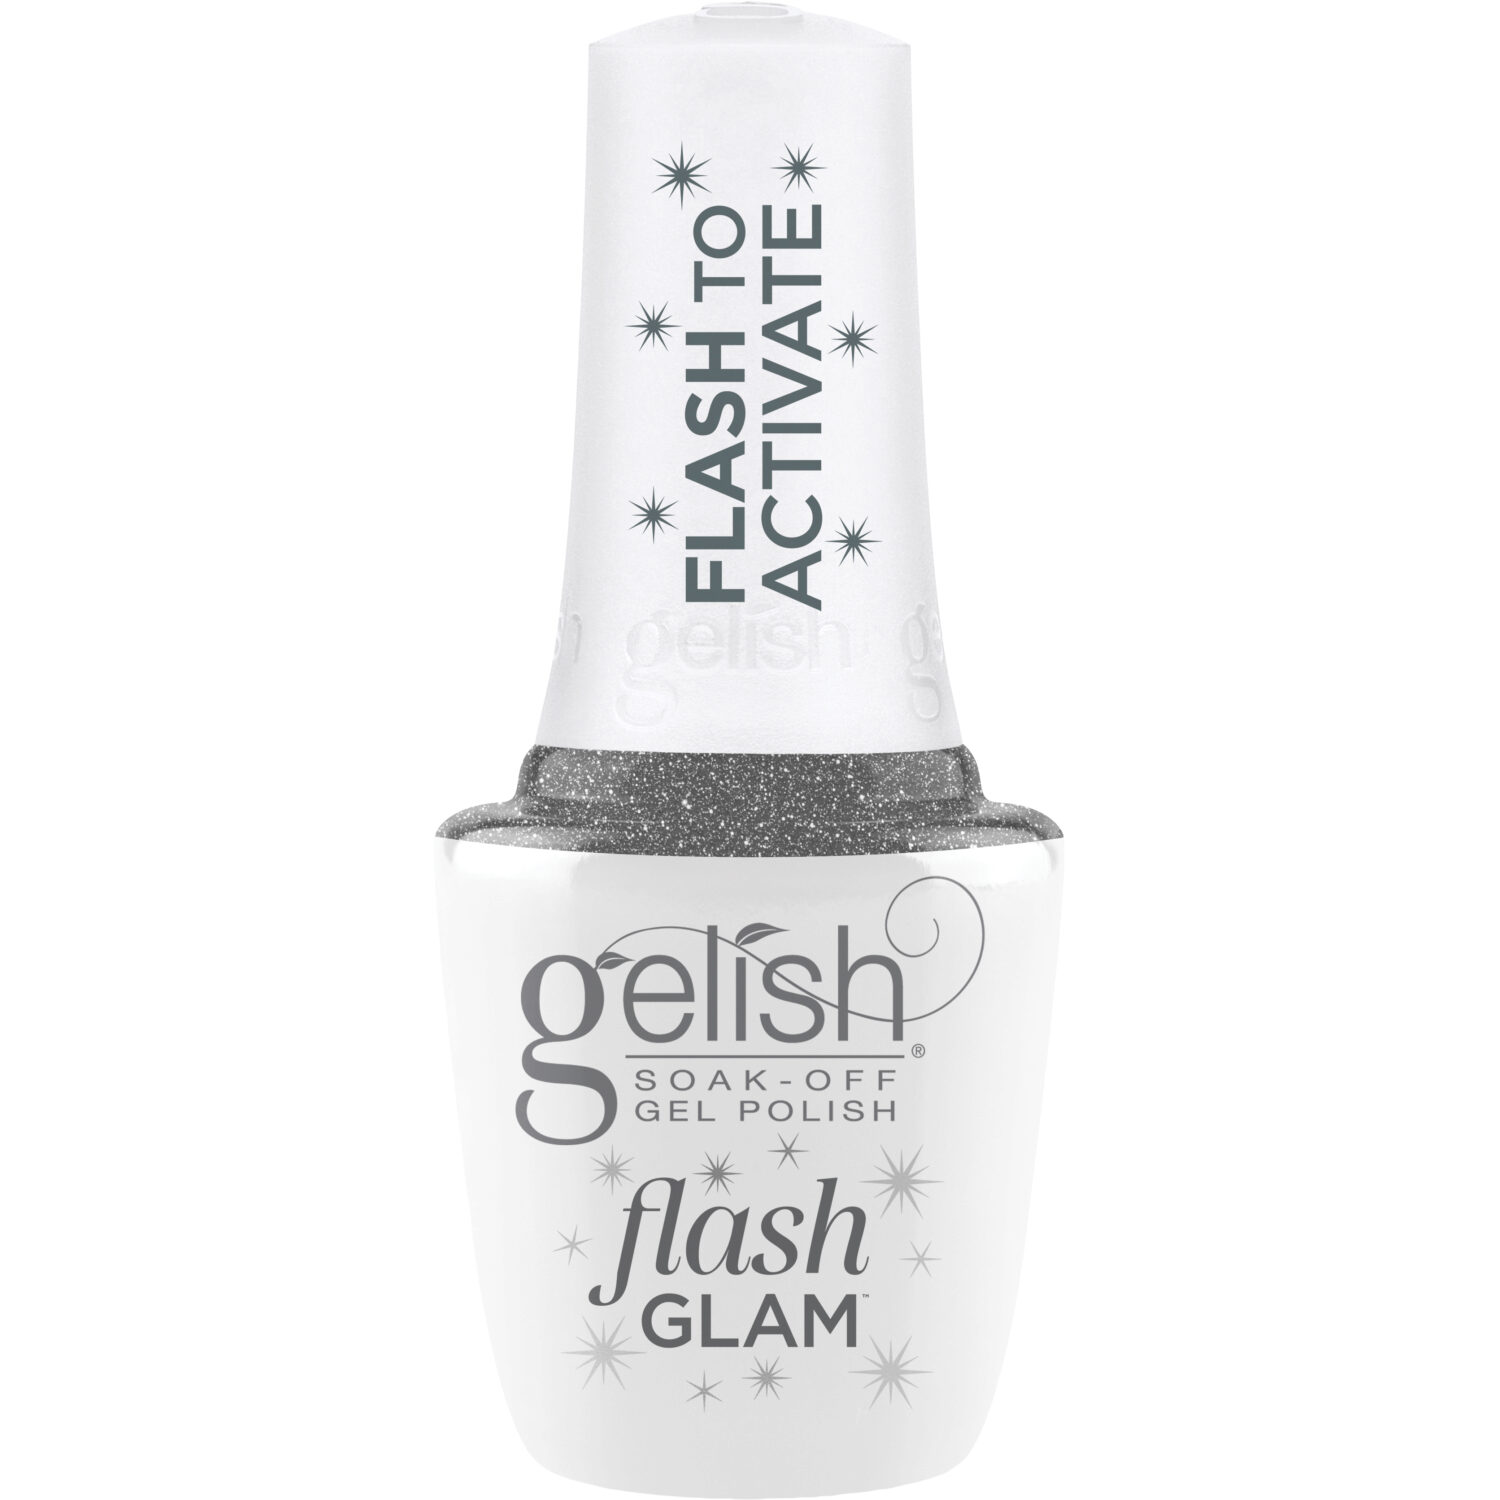 Gelish Flash Glam Dripping In Bling Glitter Gel Polish, 0.5 fl oz.